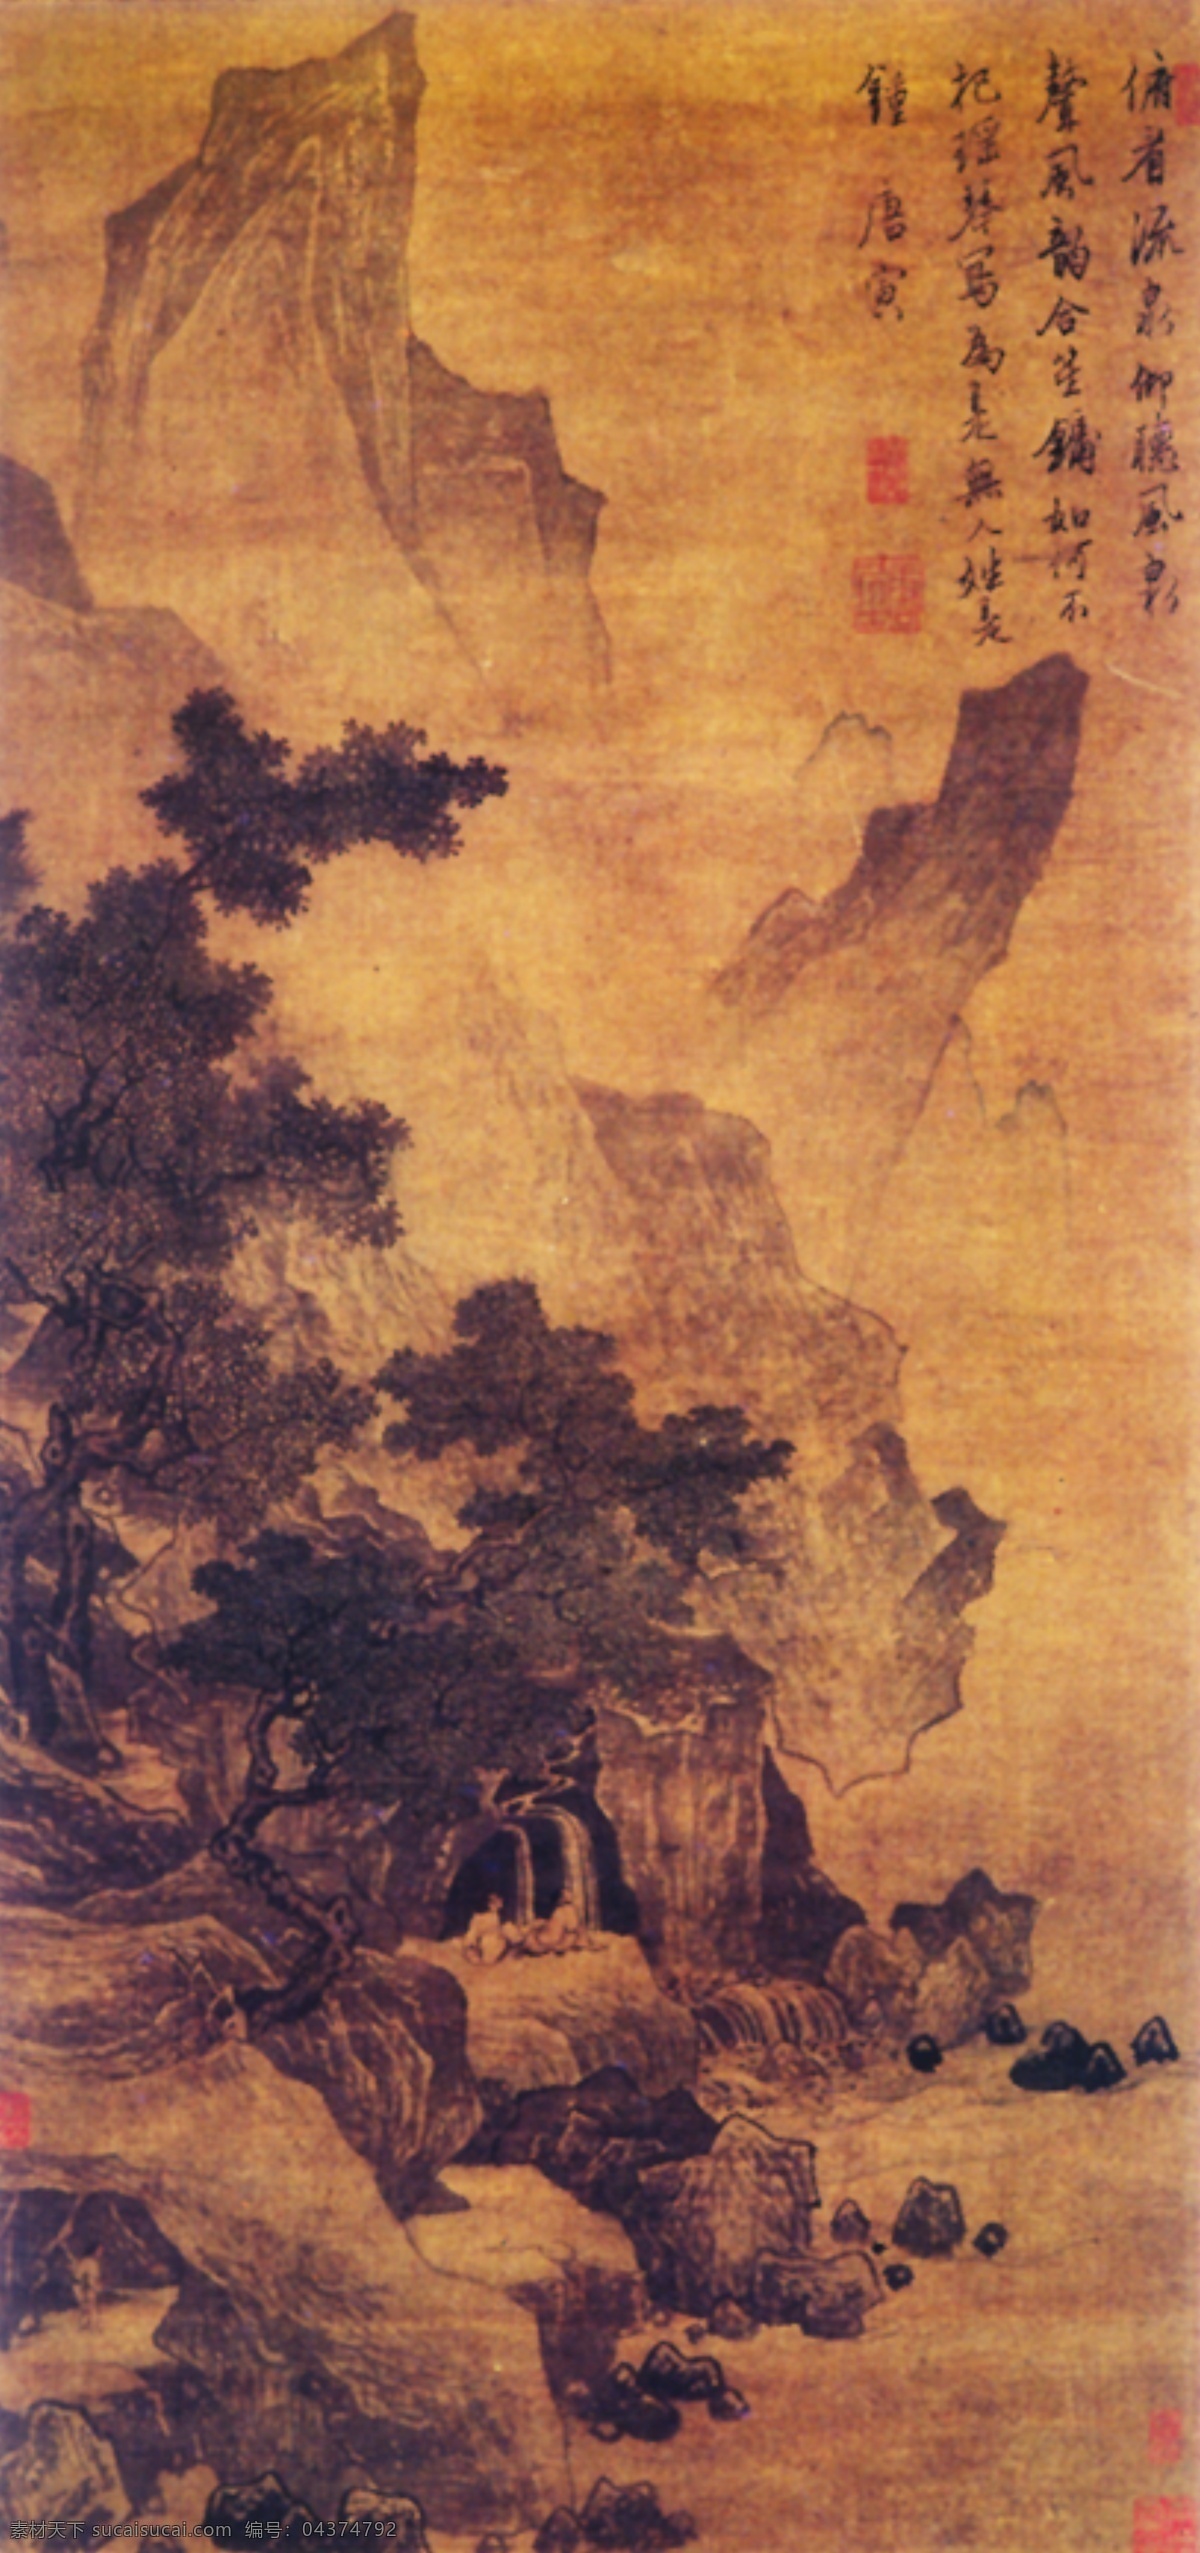 中国画 贴图 室内贴图 中国山水画 古典名画 家居装饰素材 山水风景画